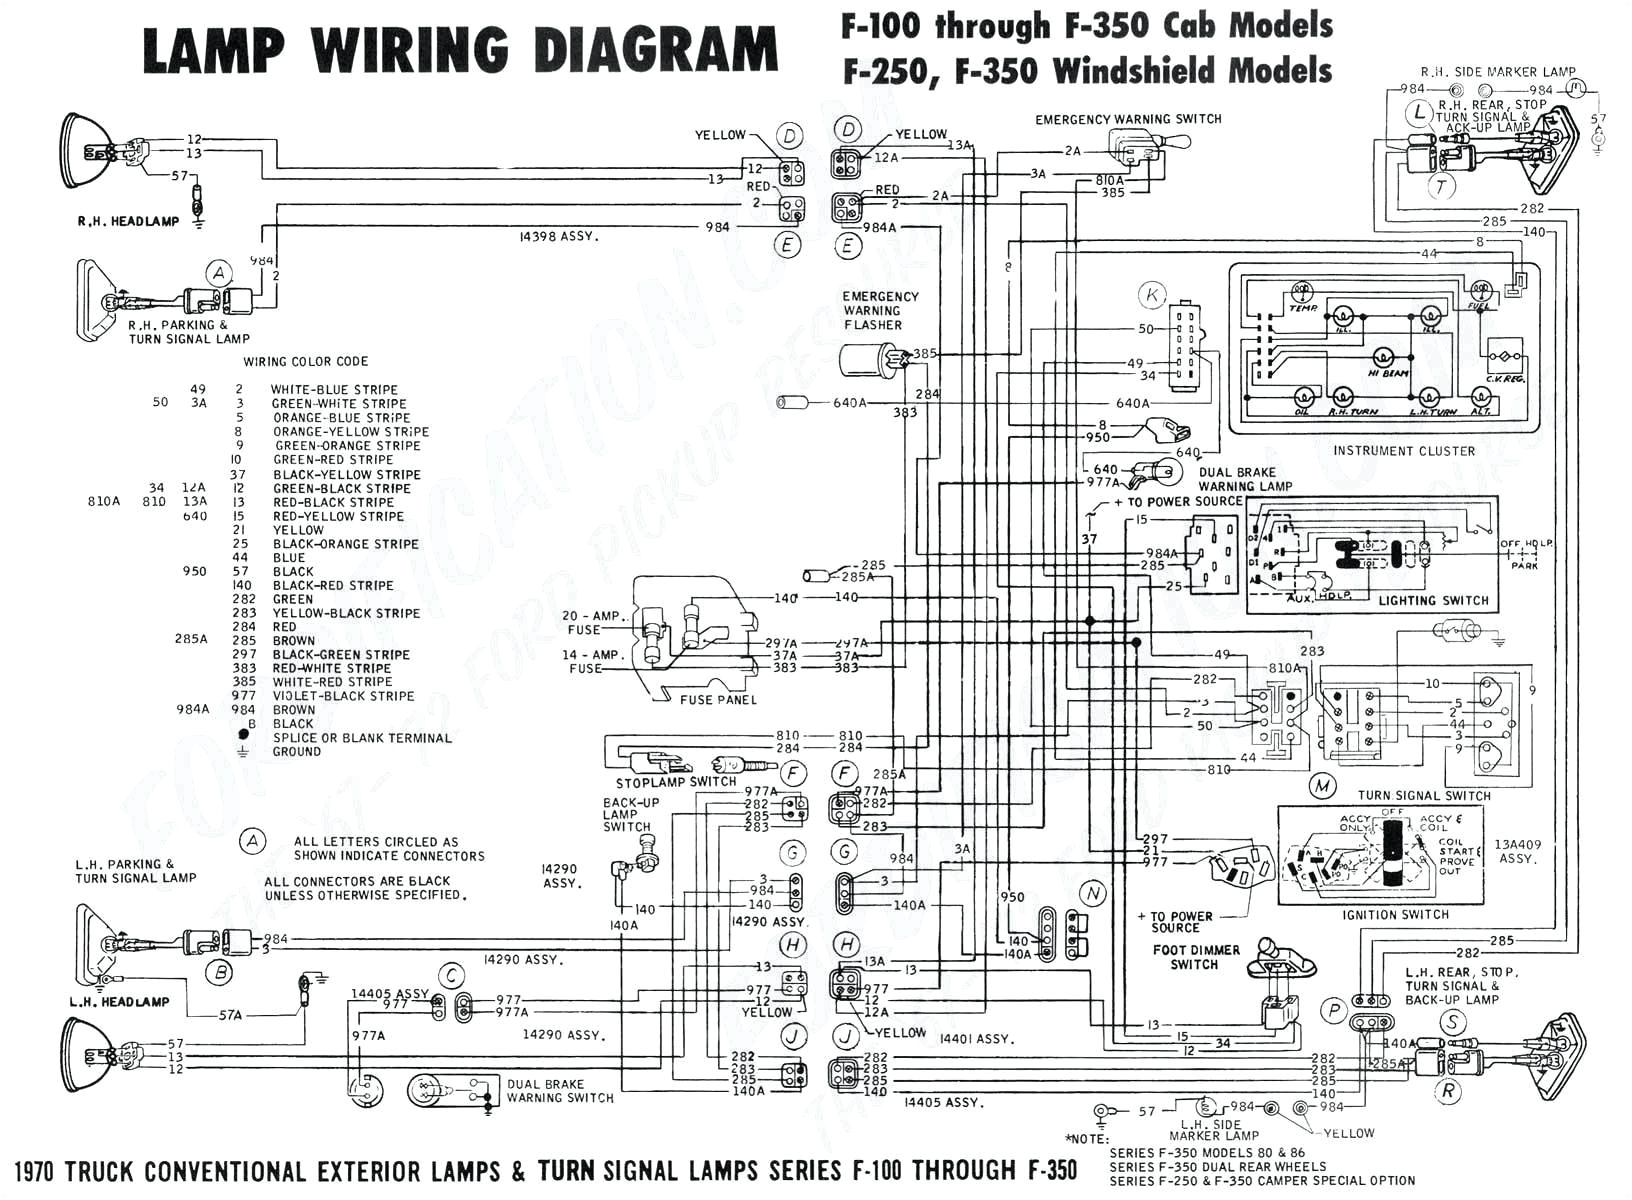 68 camaro alternator wiring diagram free download wiring diagram 68 camaro alternator wiring diagram free download